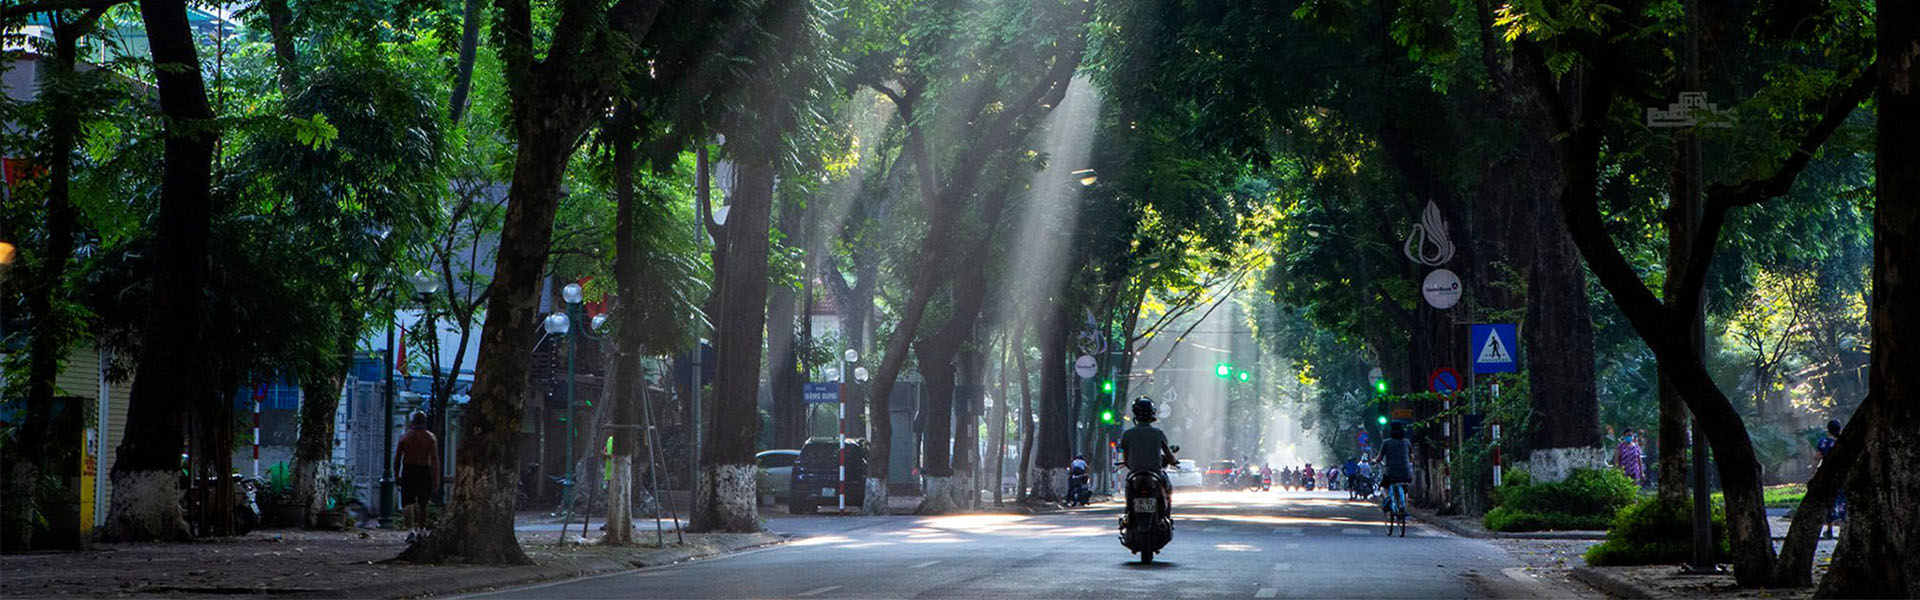 Khám phá thủ đô với trọn bộ kinh nghiệm du lịch Hà Nội tự túc từ MoMo